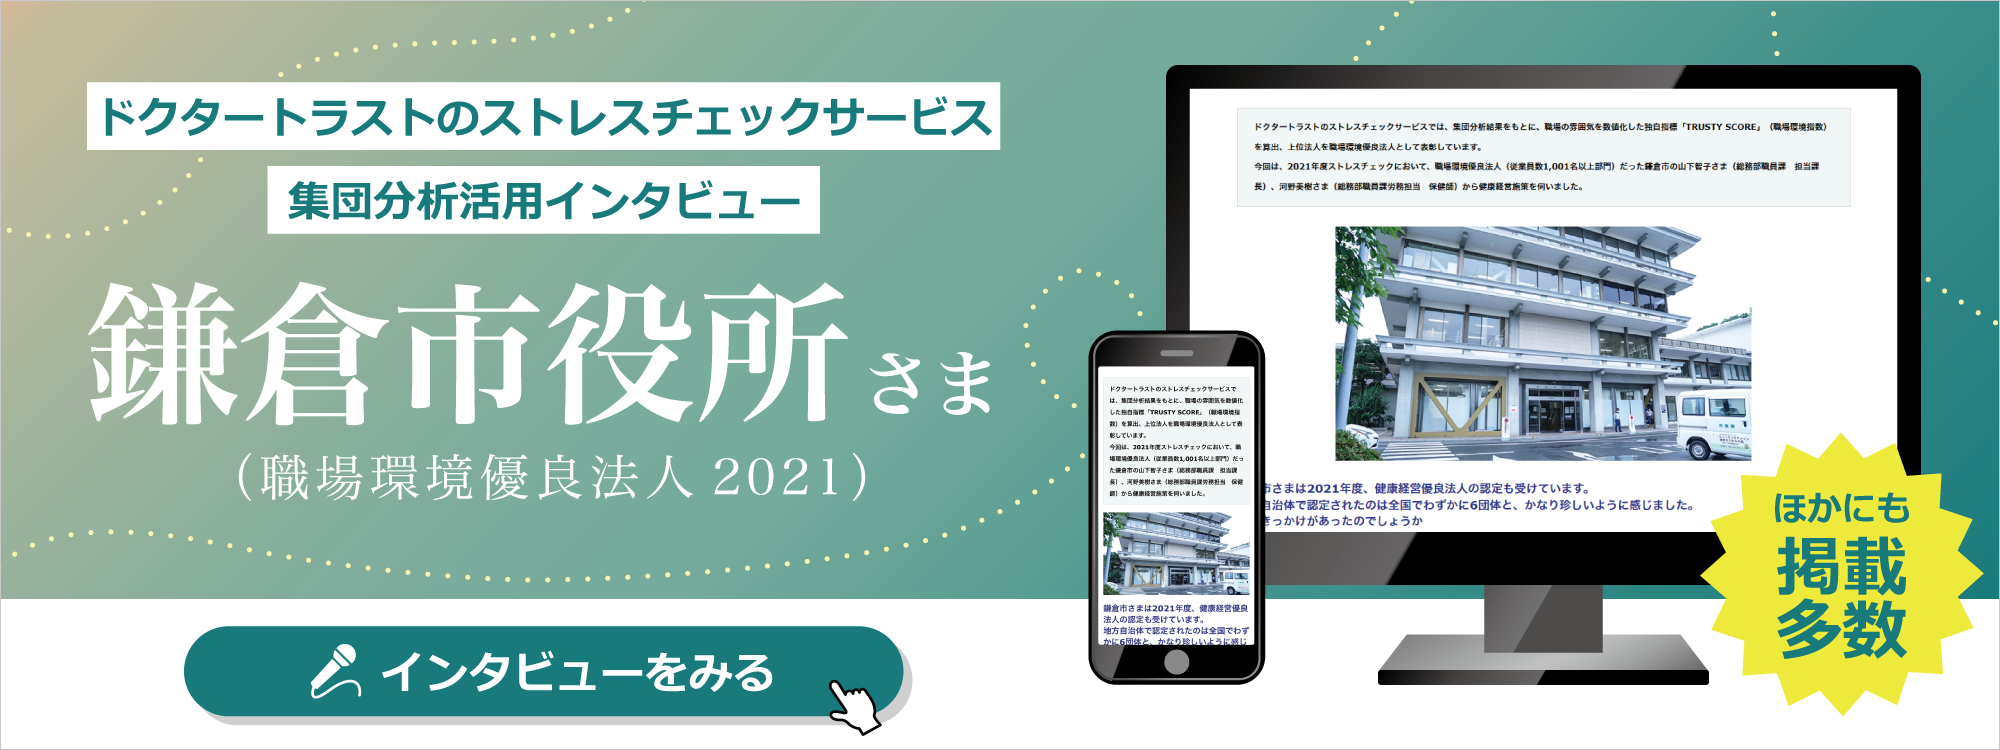 鎌倉市役所さま 職場環境優良法人2021インタビューバナー